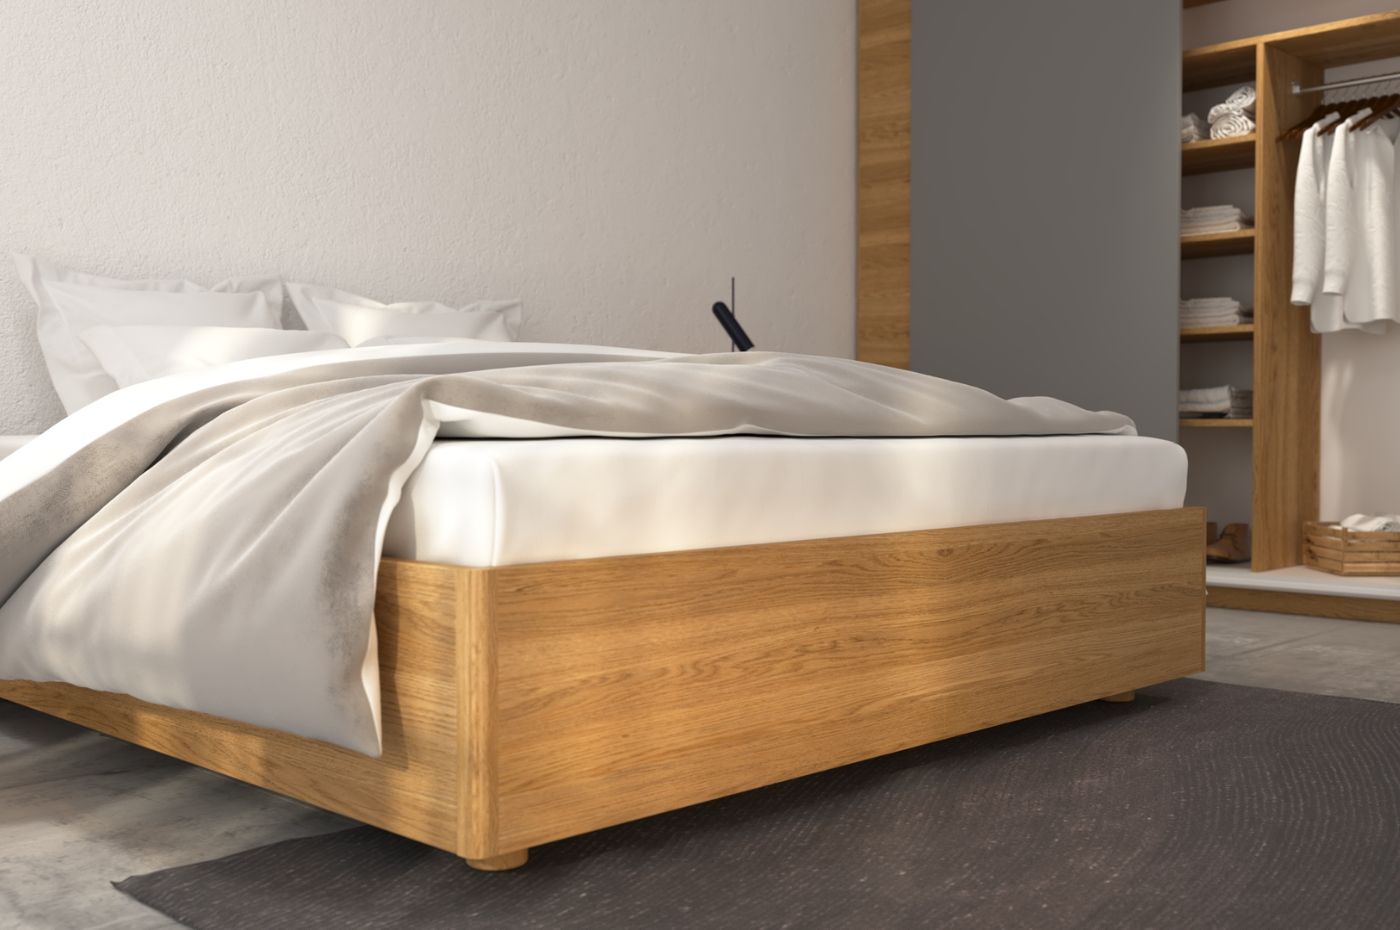 Phòng ngủ bằng gỗ an toàn cho người lớn tuổi